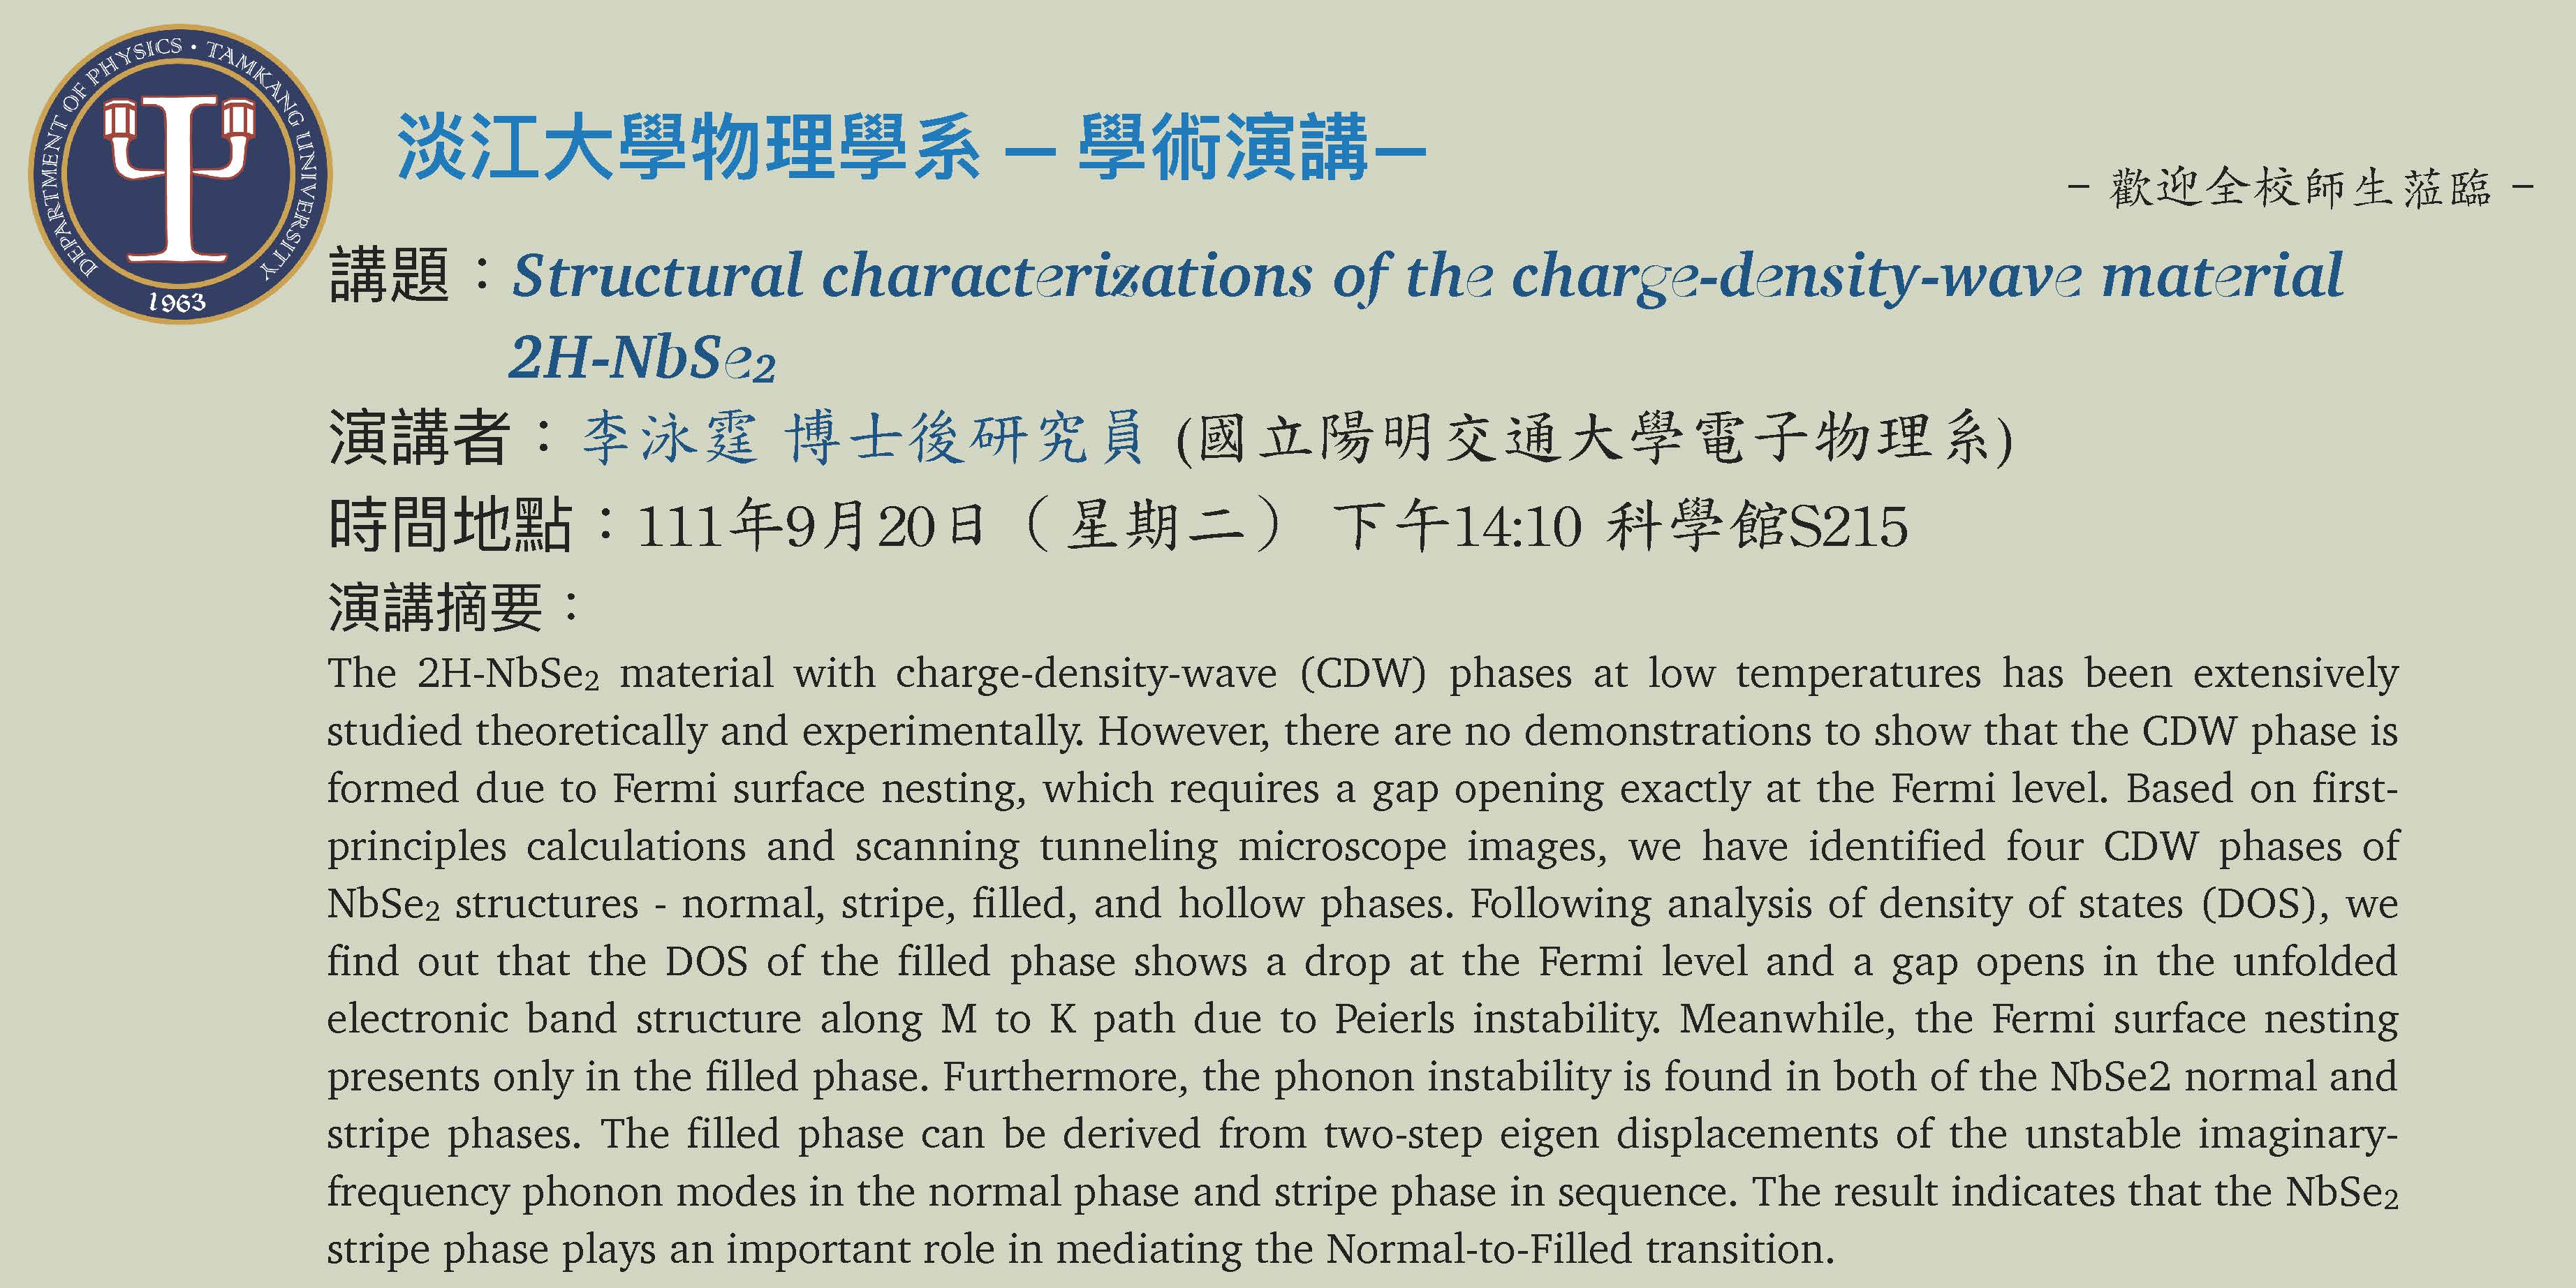 【演講】111.9.20 講題：Structural characterizations of the charge-density-wave material 2H-NbSe2